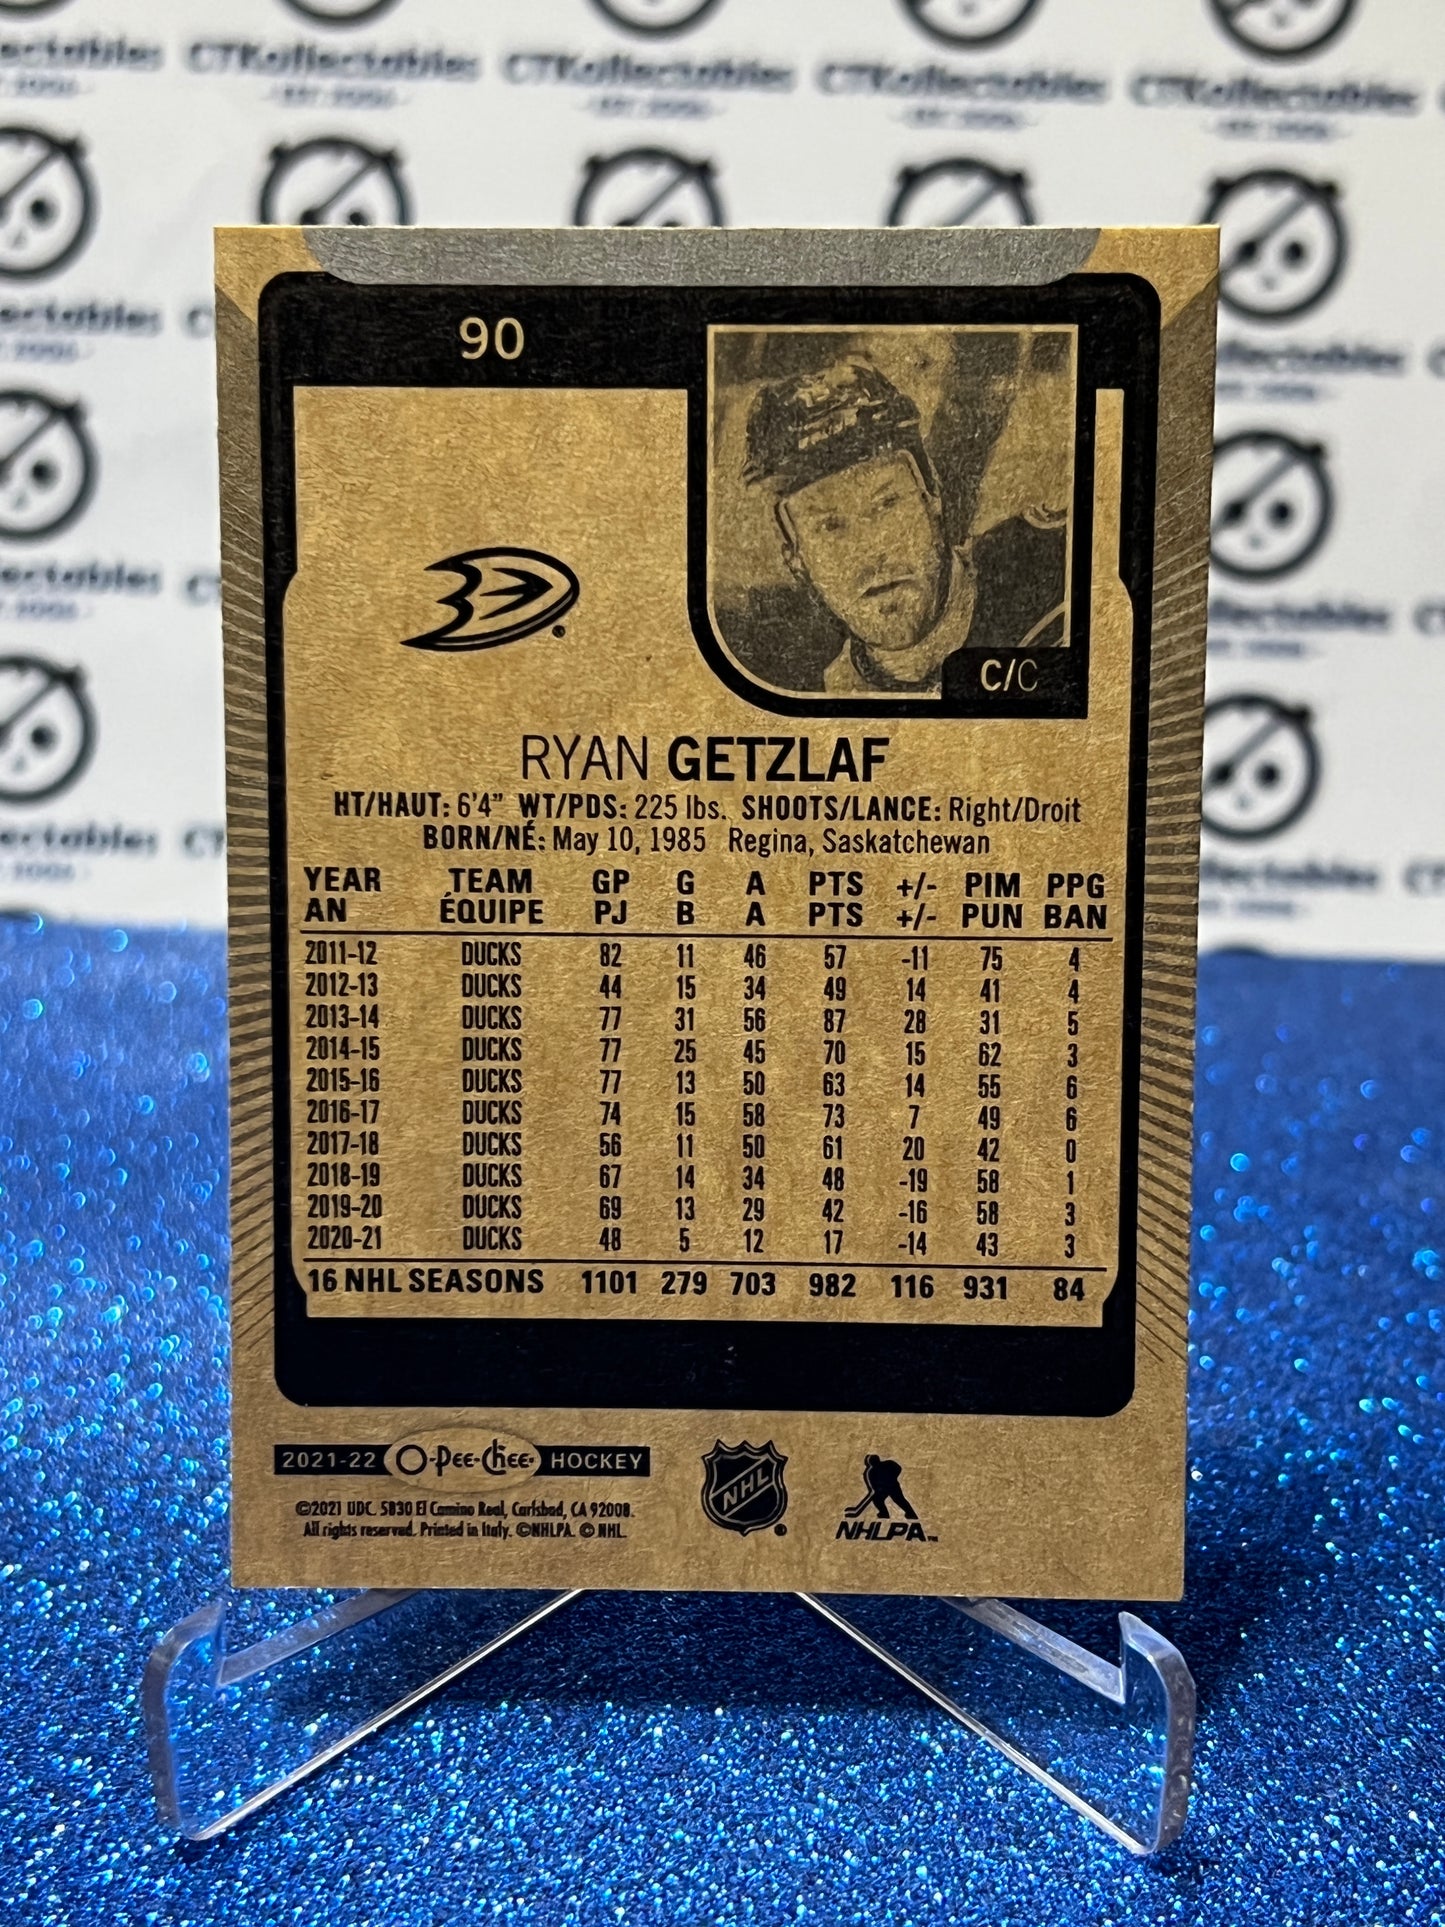 2021-22 O-PEE-CHEE RYAN GETZLAF # 90 ANAHEIM DUCKS NHL HOCKEY CARD